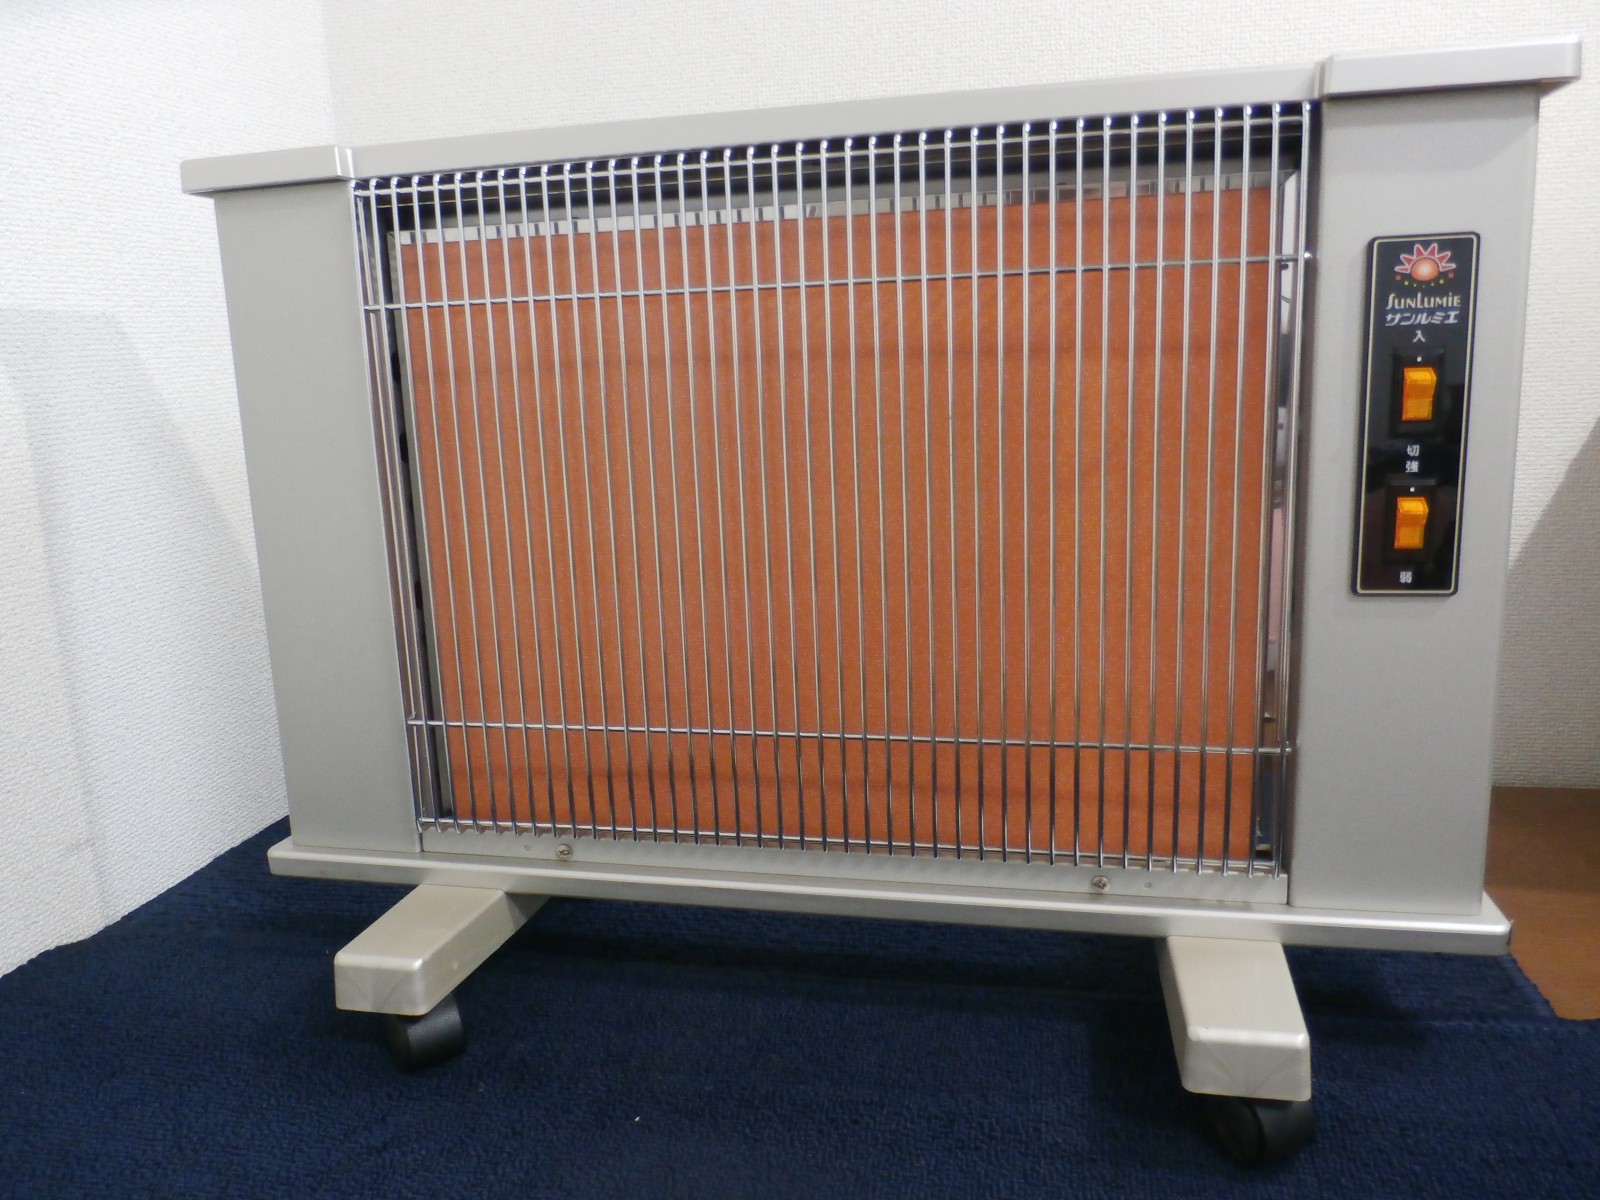 日本遠赤外線株式会社サンルミエ 遠赤外線暖房ヒーター E800L-TM2 